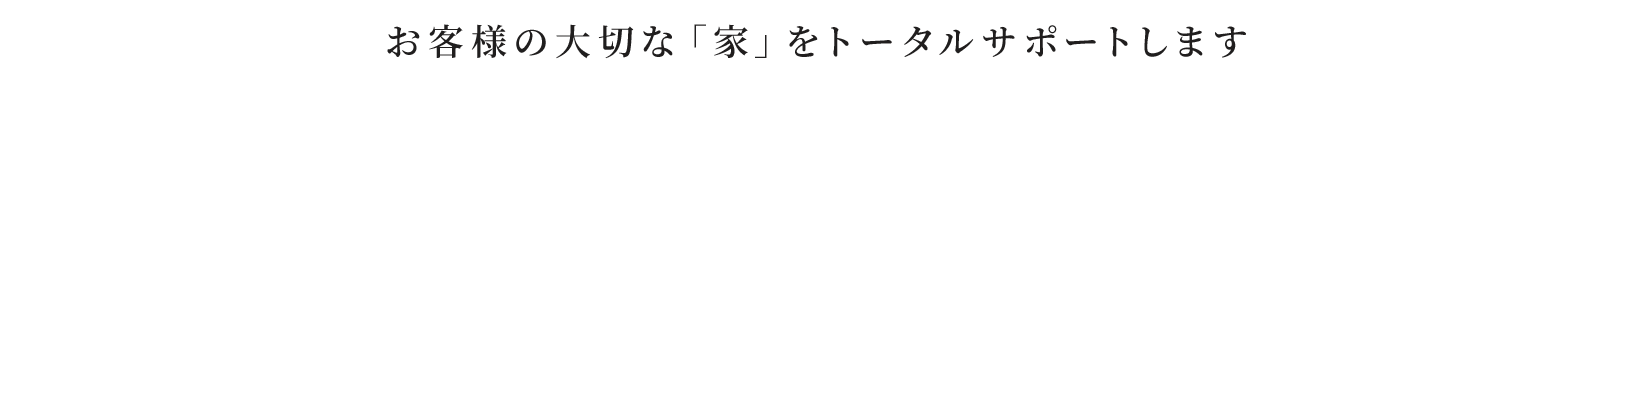 お客様の大切な「家」をトータルサポートしますTotal reform support mizuno